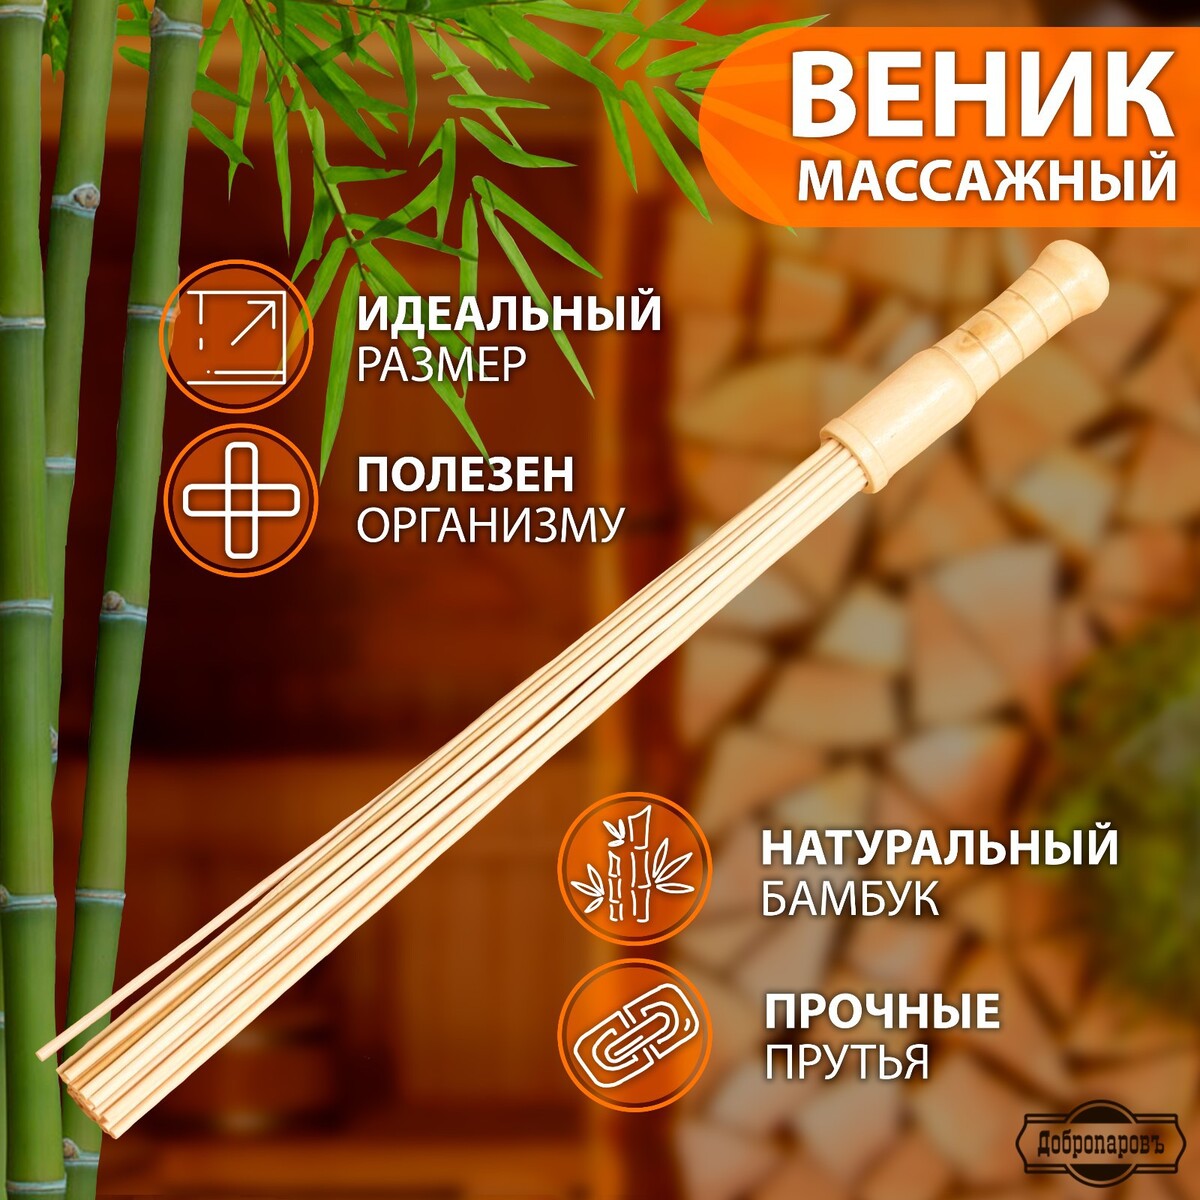 Веник массажный из бамбука 60см, 0,5см прут веник массажный из бамбука 60см 0 5см прут